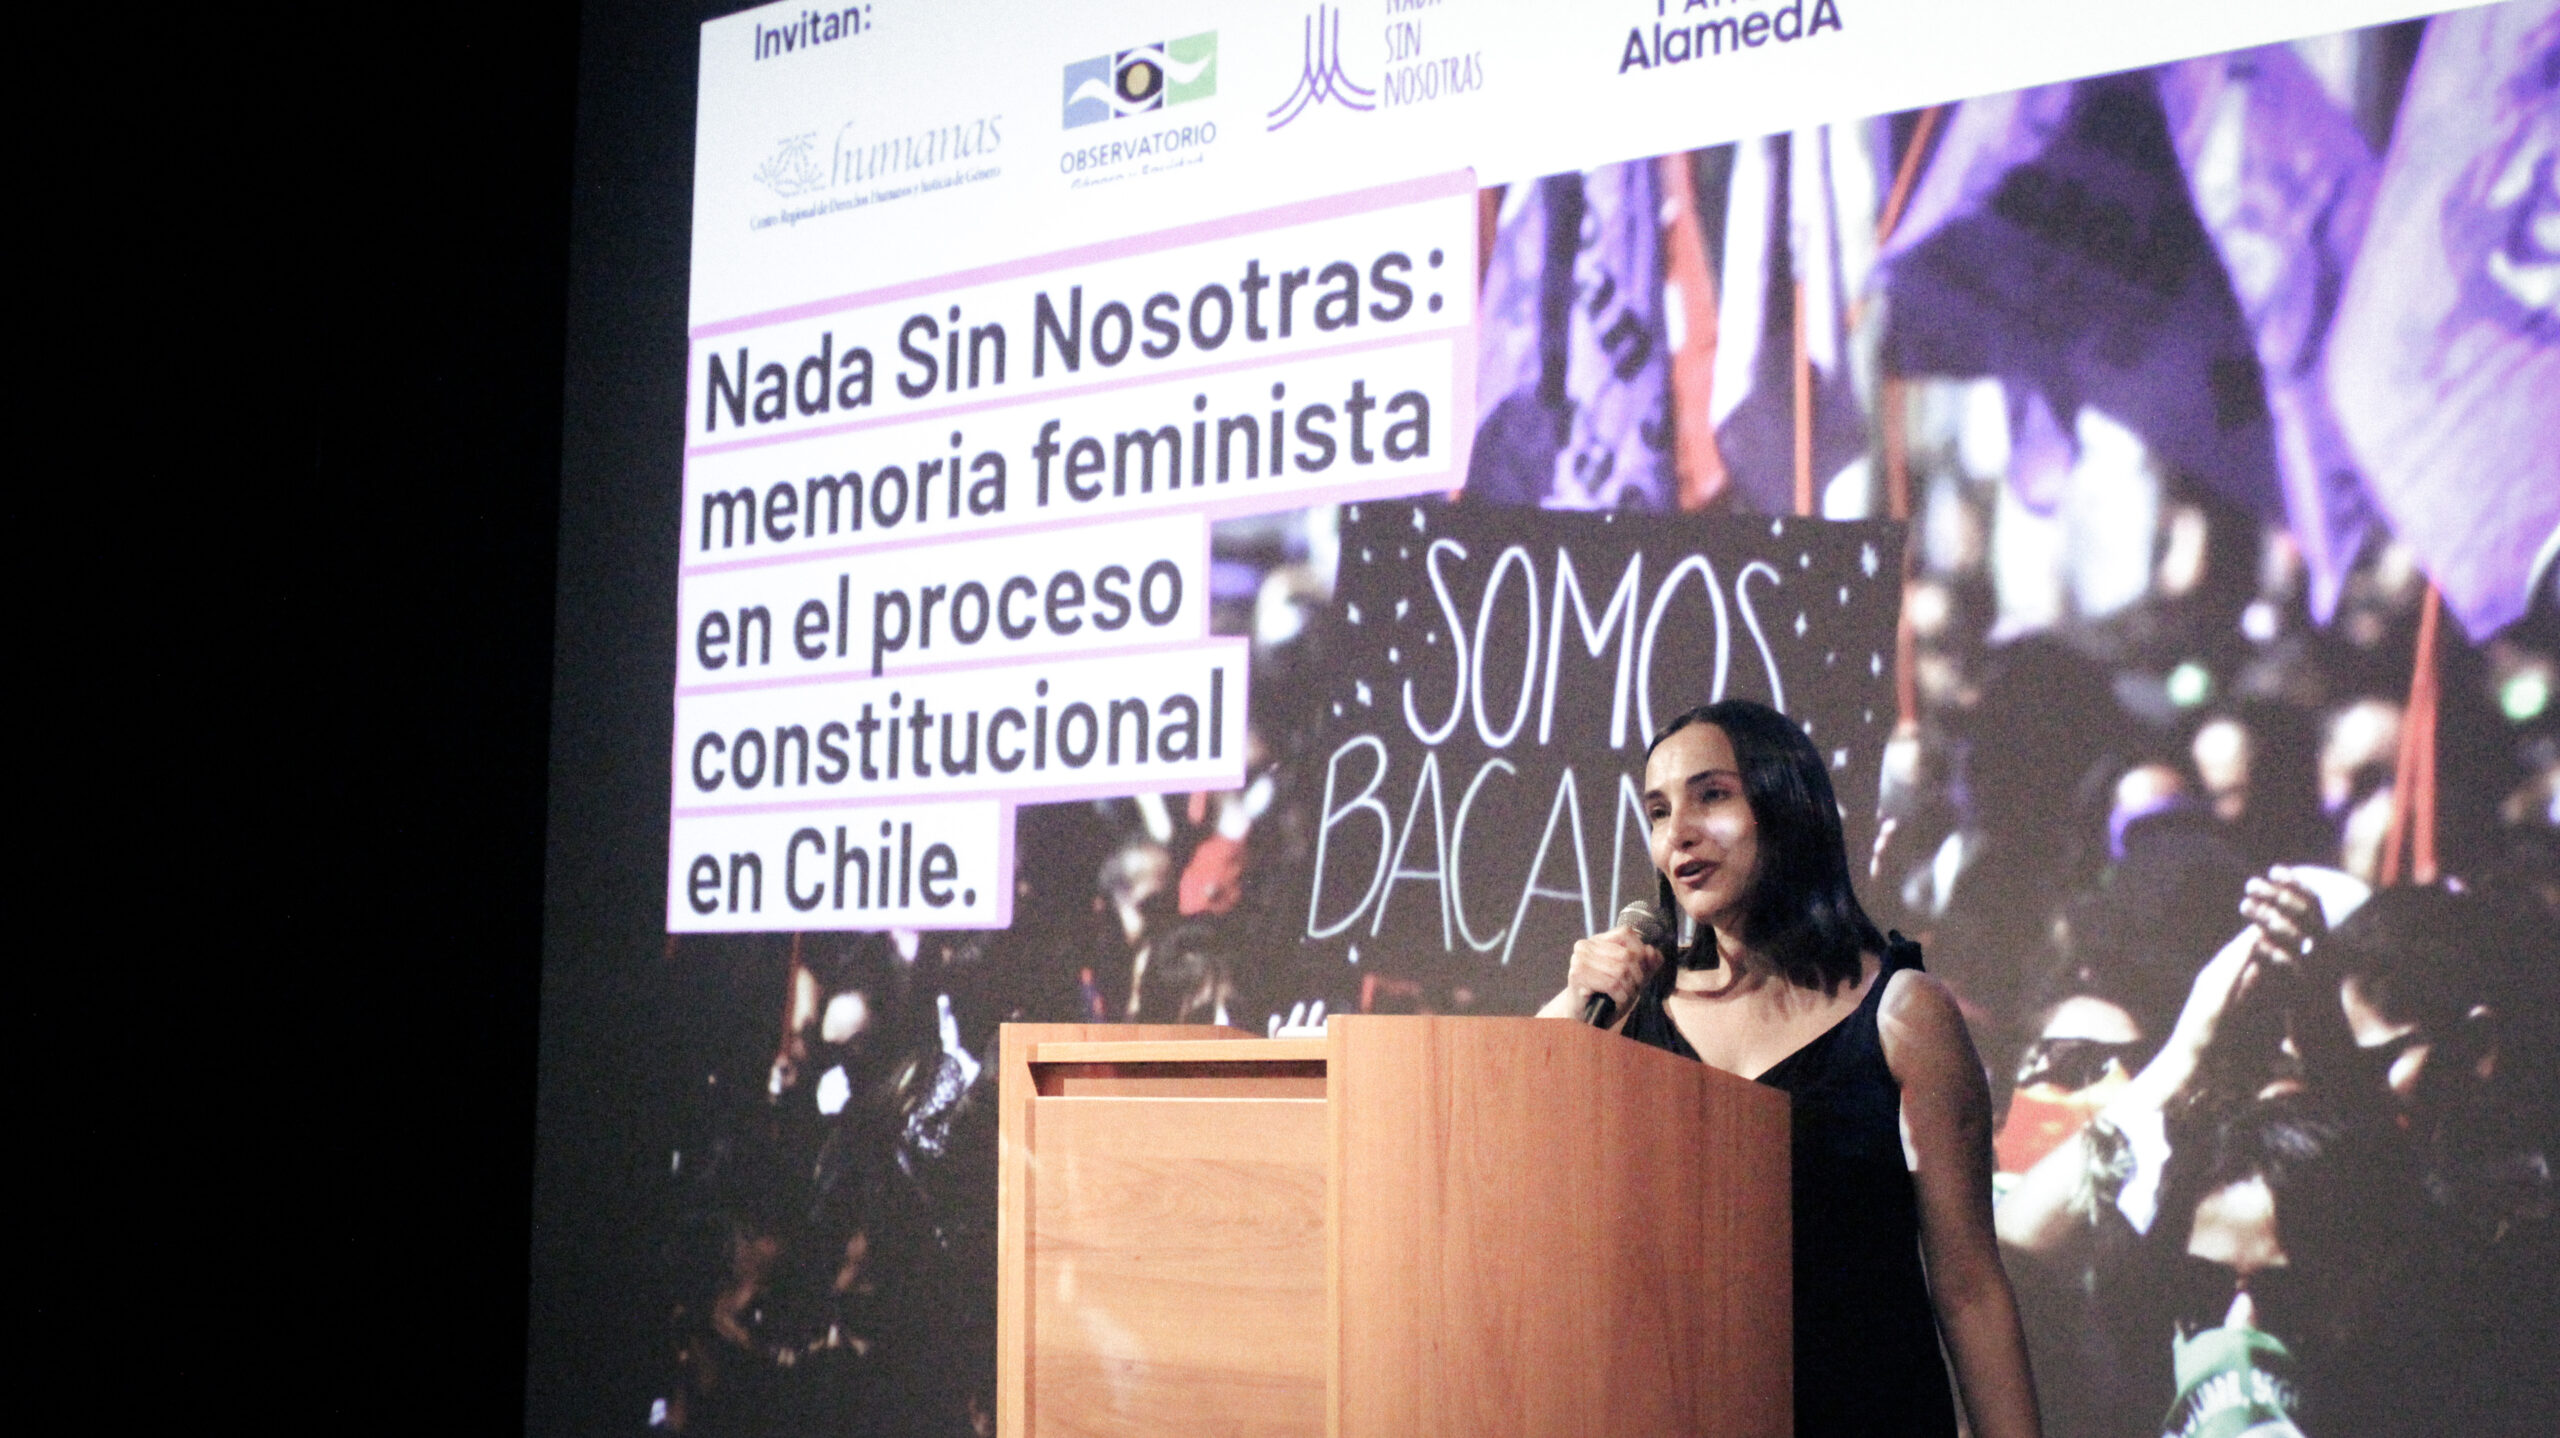 Estreno del documental: “Nada Sin Nosotras: memoria feminista en el proceso constitucional en Chile”. Estreno del documental